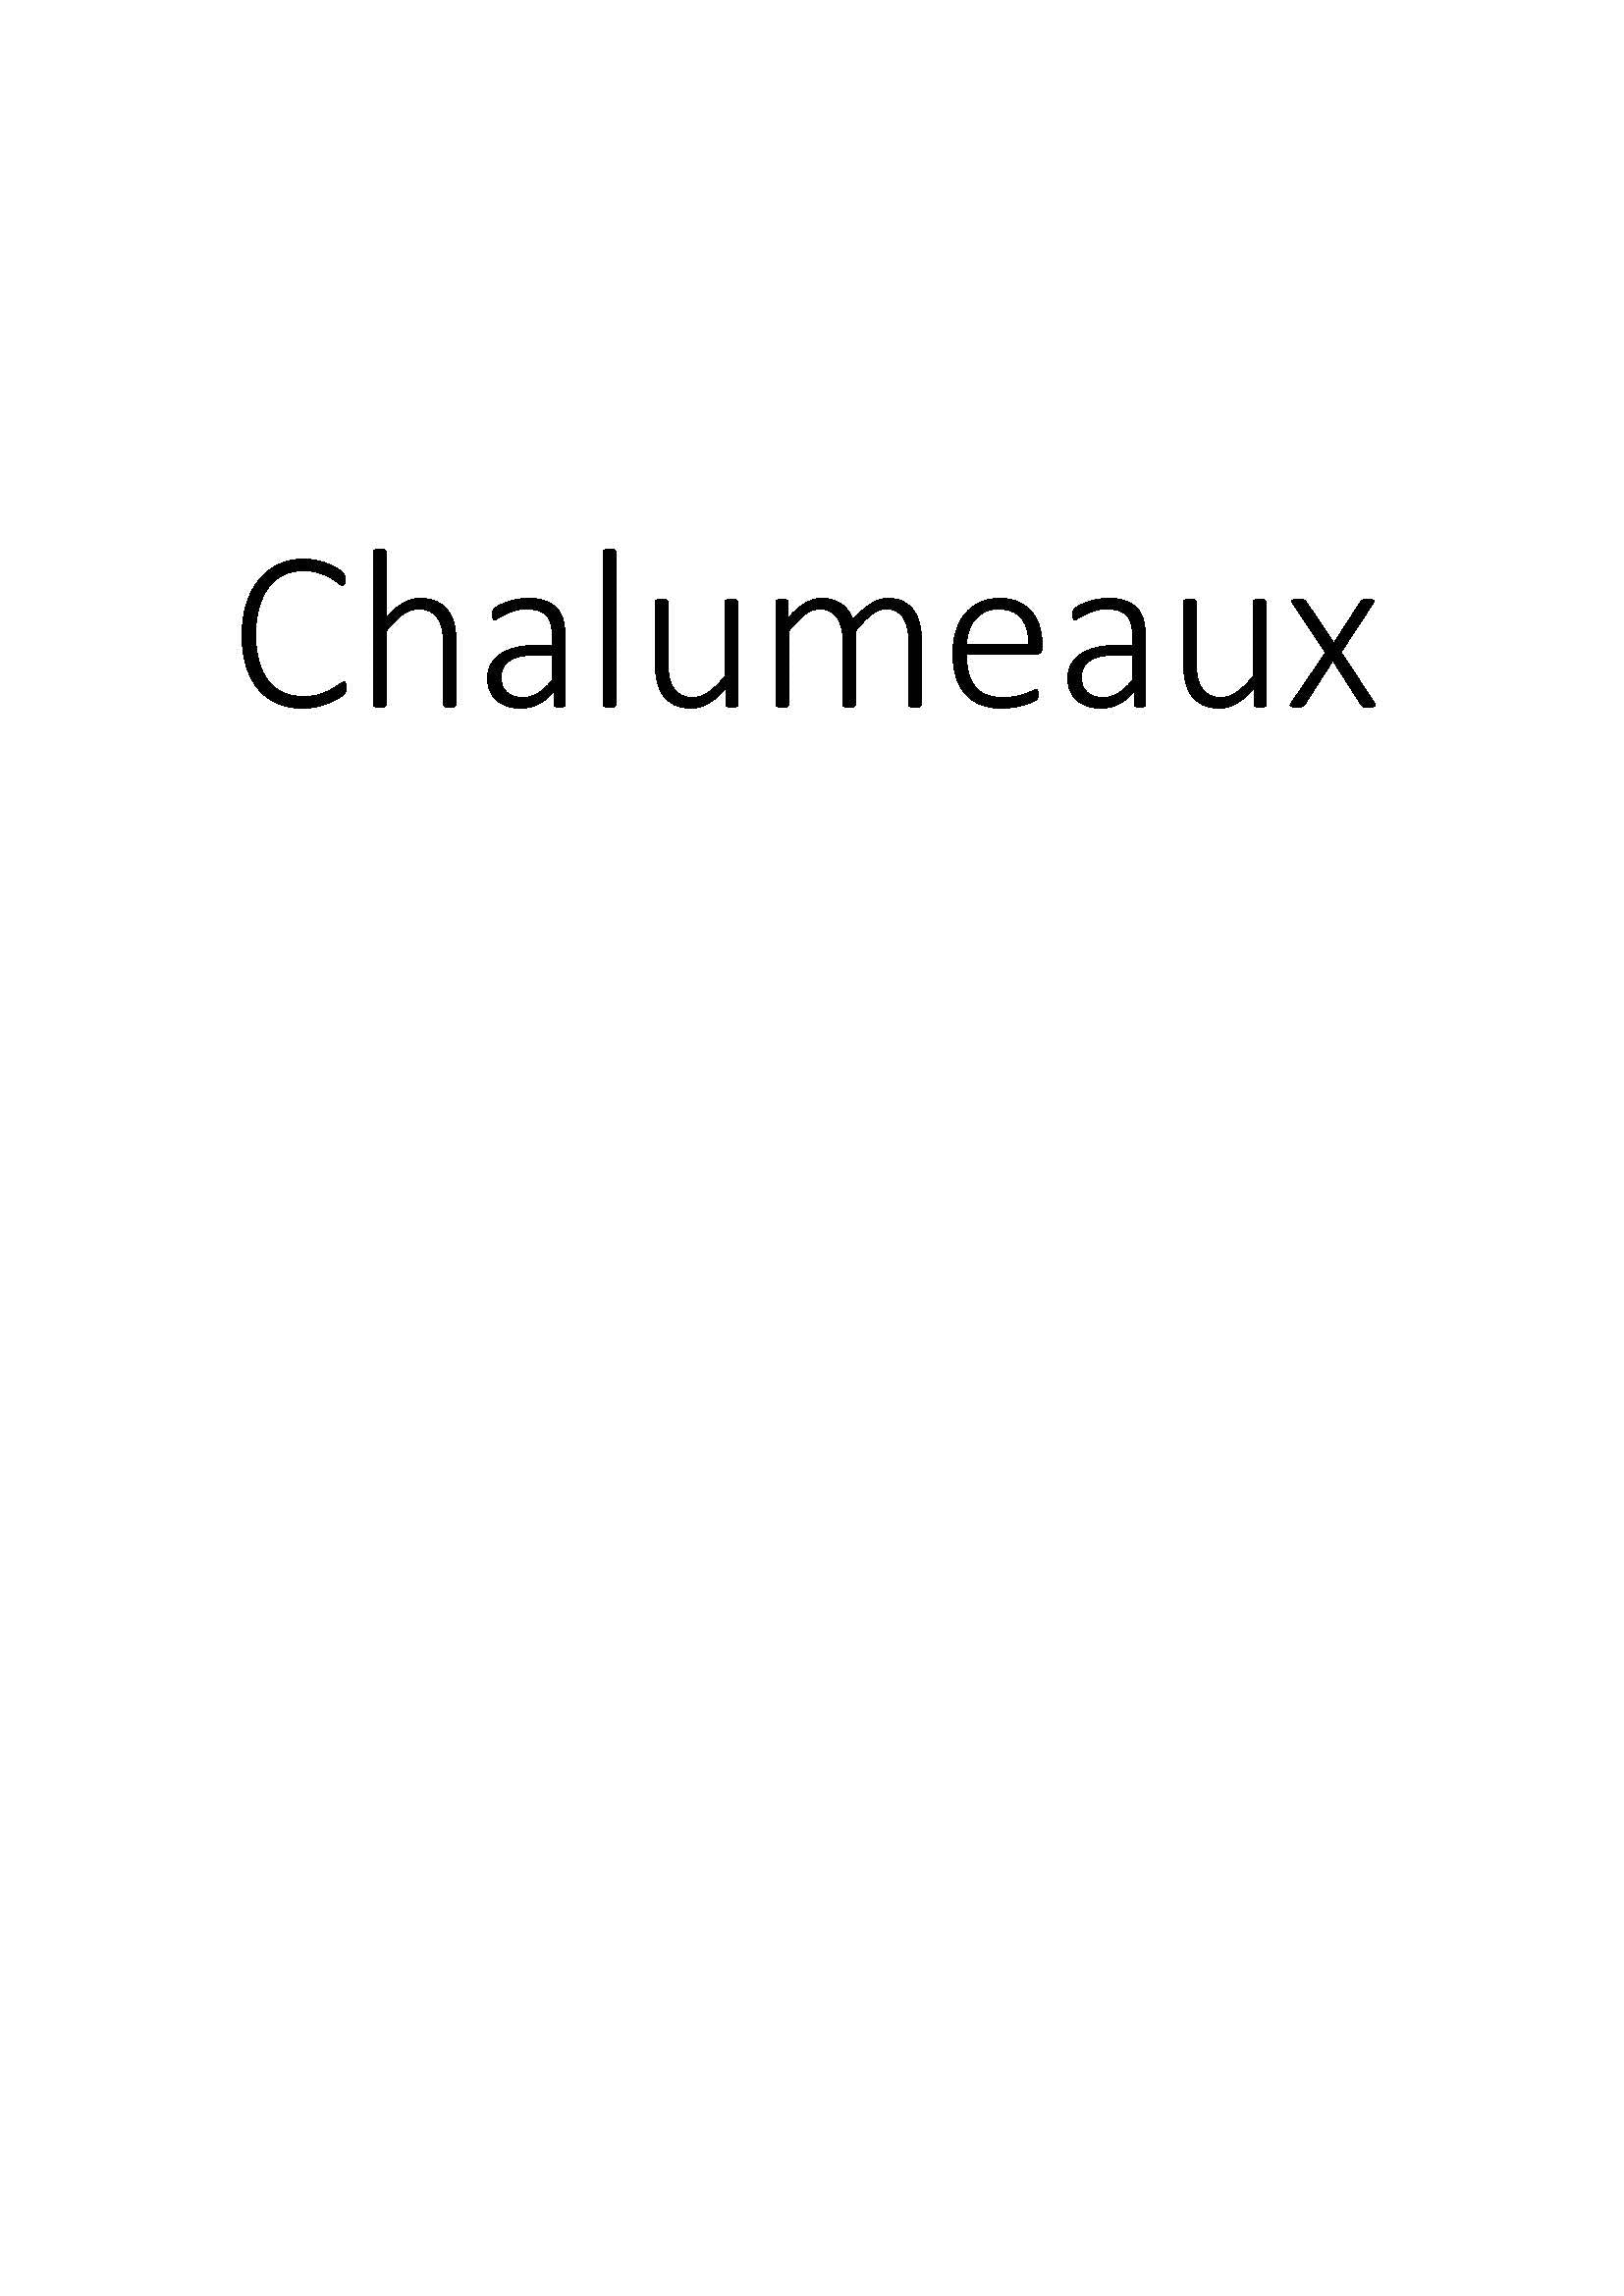 Chalumeaux clicktofournisseur.com